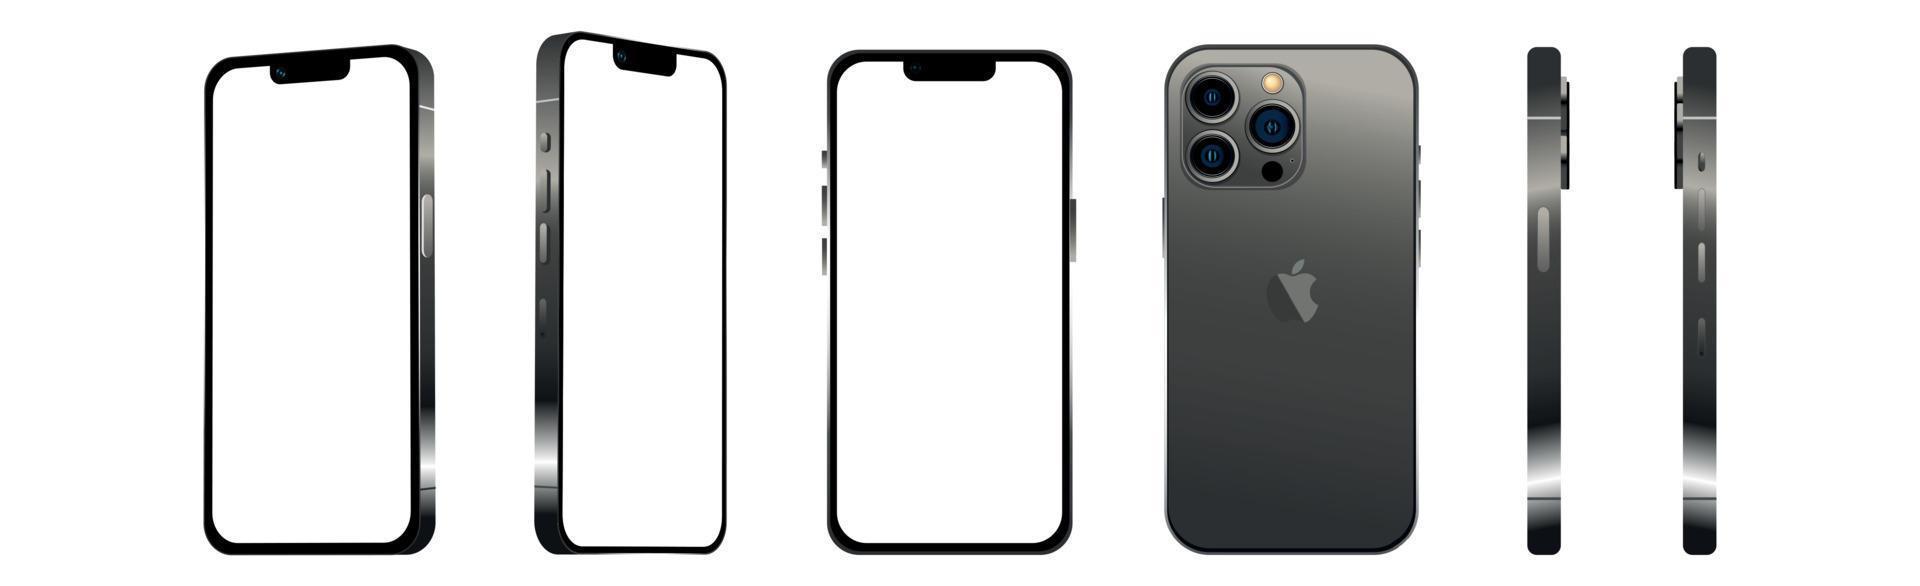 nero moderno smartphone mobile iphone 13 pro in 6 diverse angolazioni su uno sfondo bianco - vettore